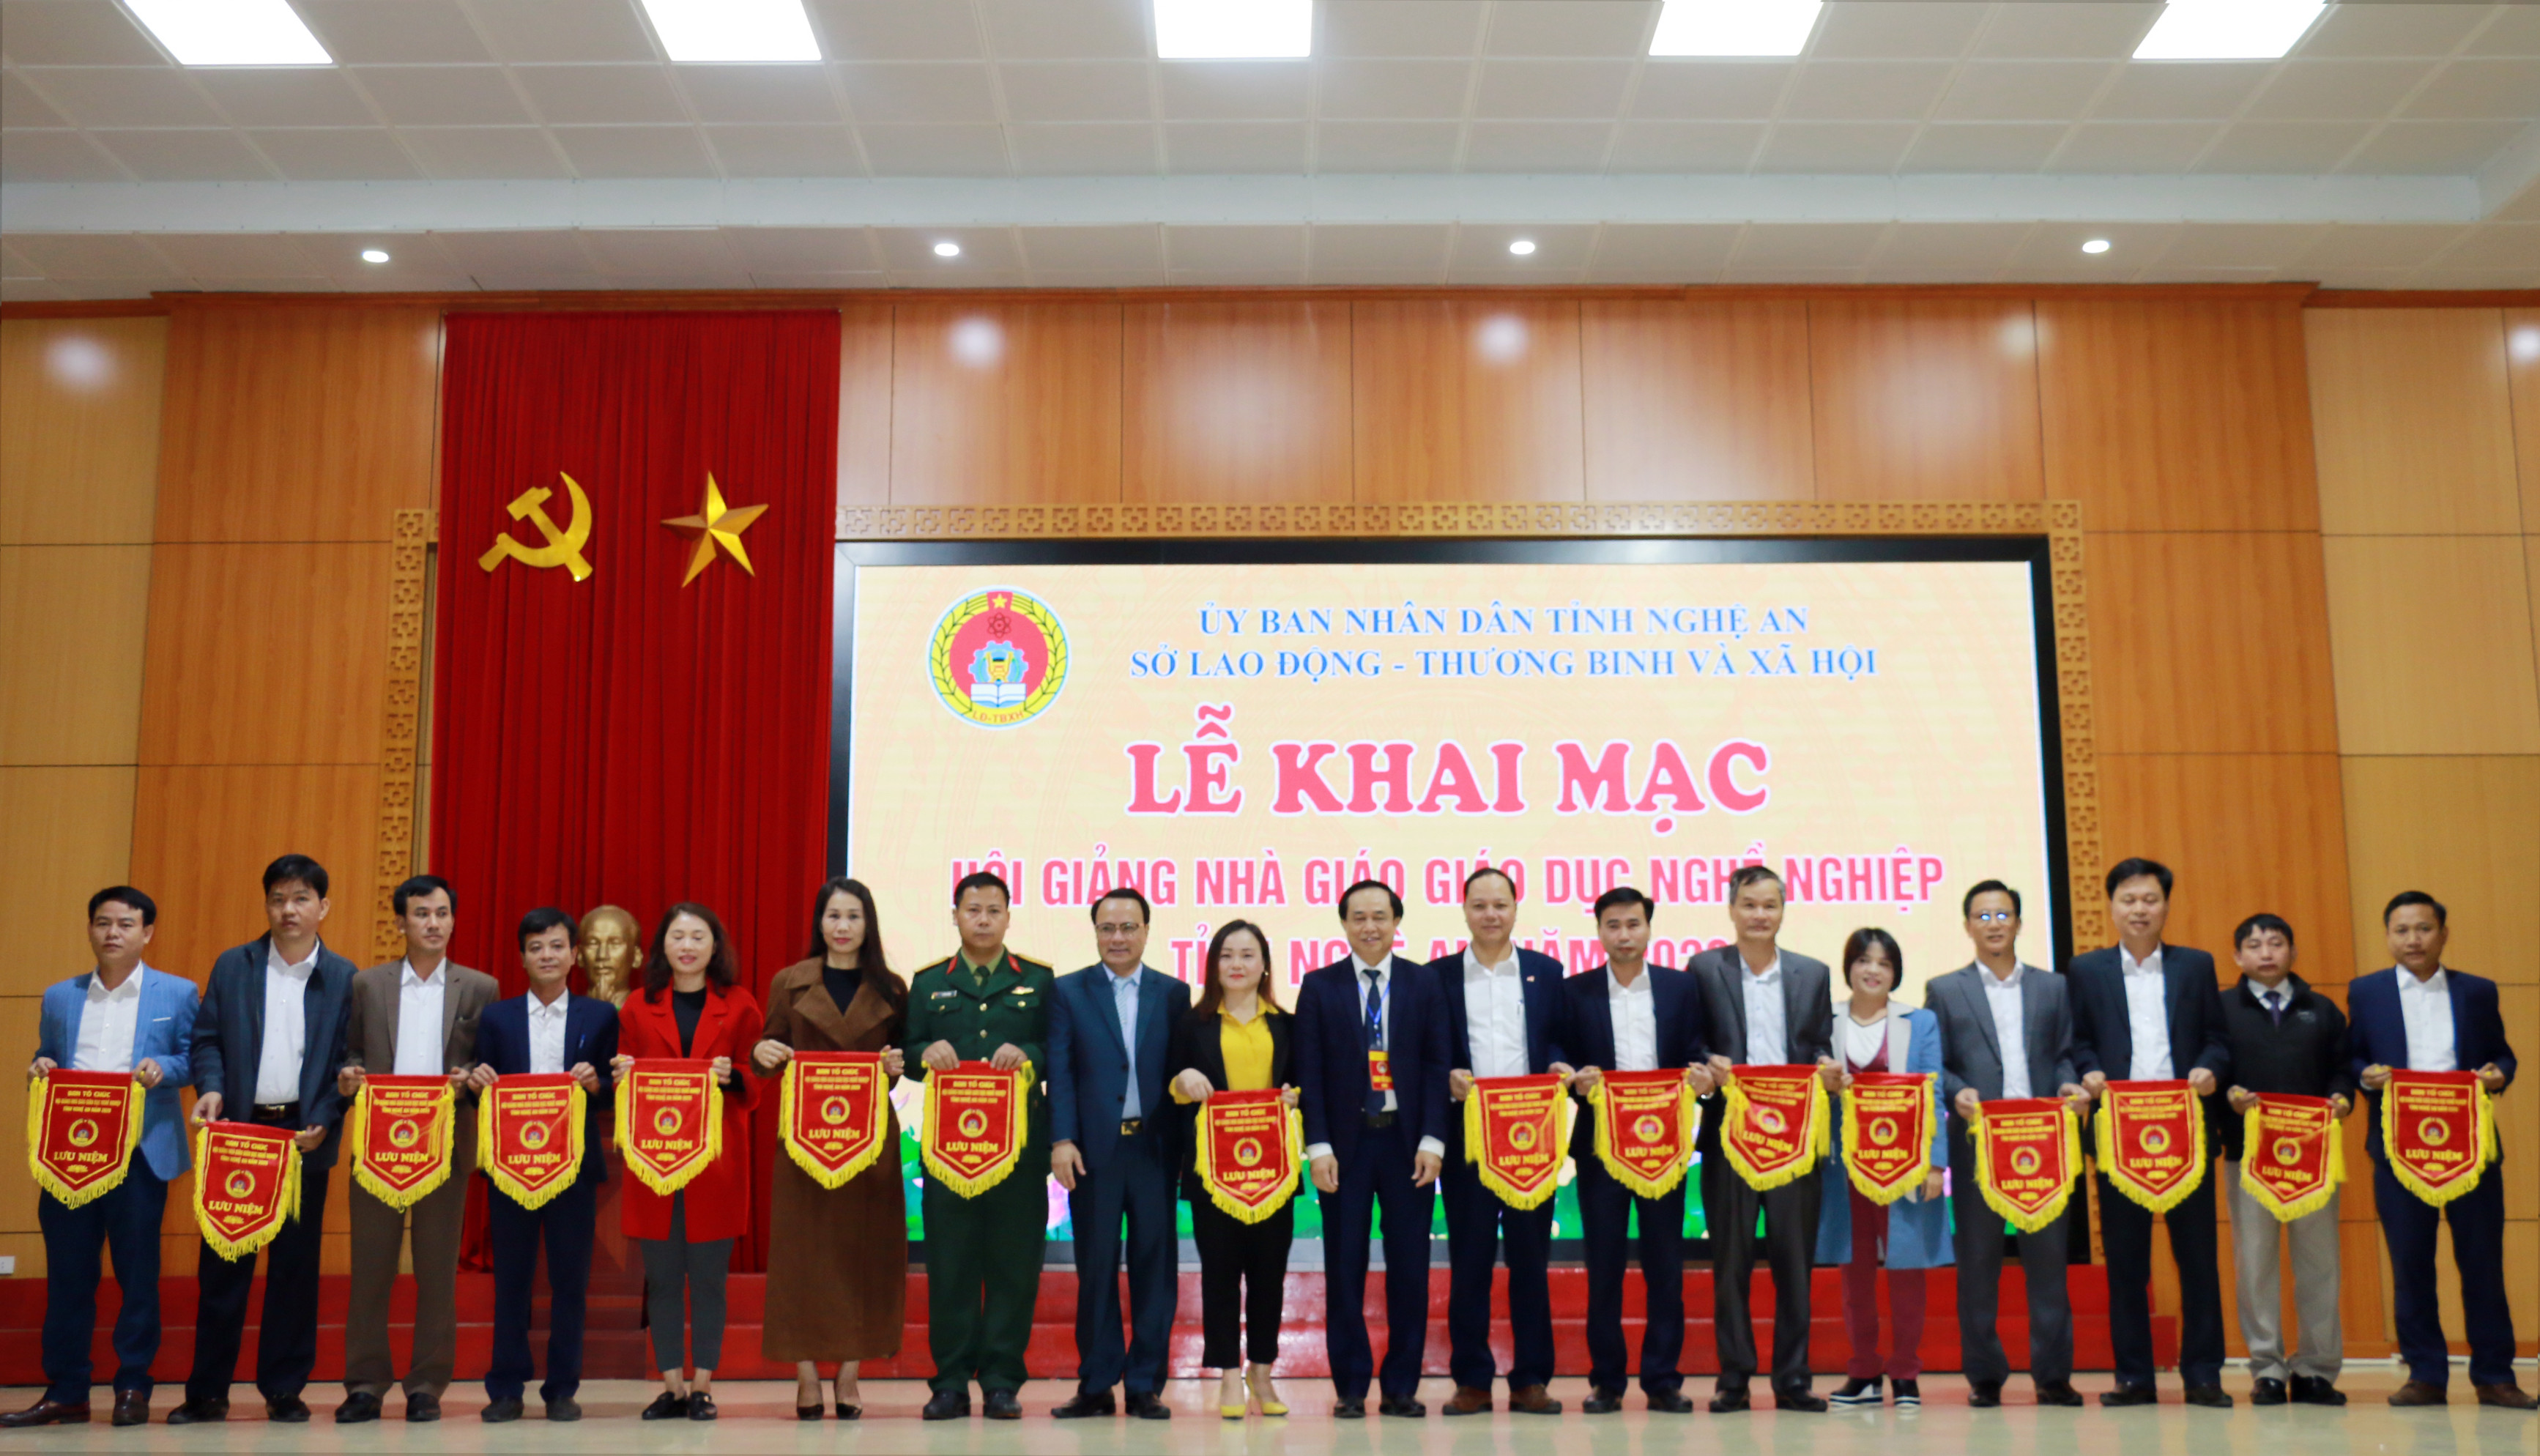 Đồng chí Nguyễn Nam Đình và Đàon Hồng Vũ trao cờ cho các đơn vị tham gia hội thi. Ảnh: MH